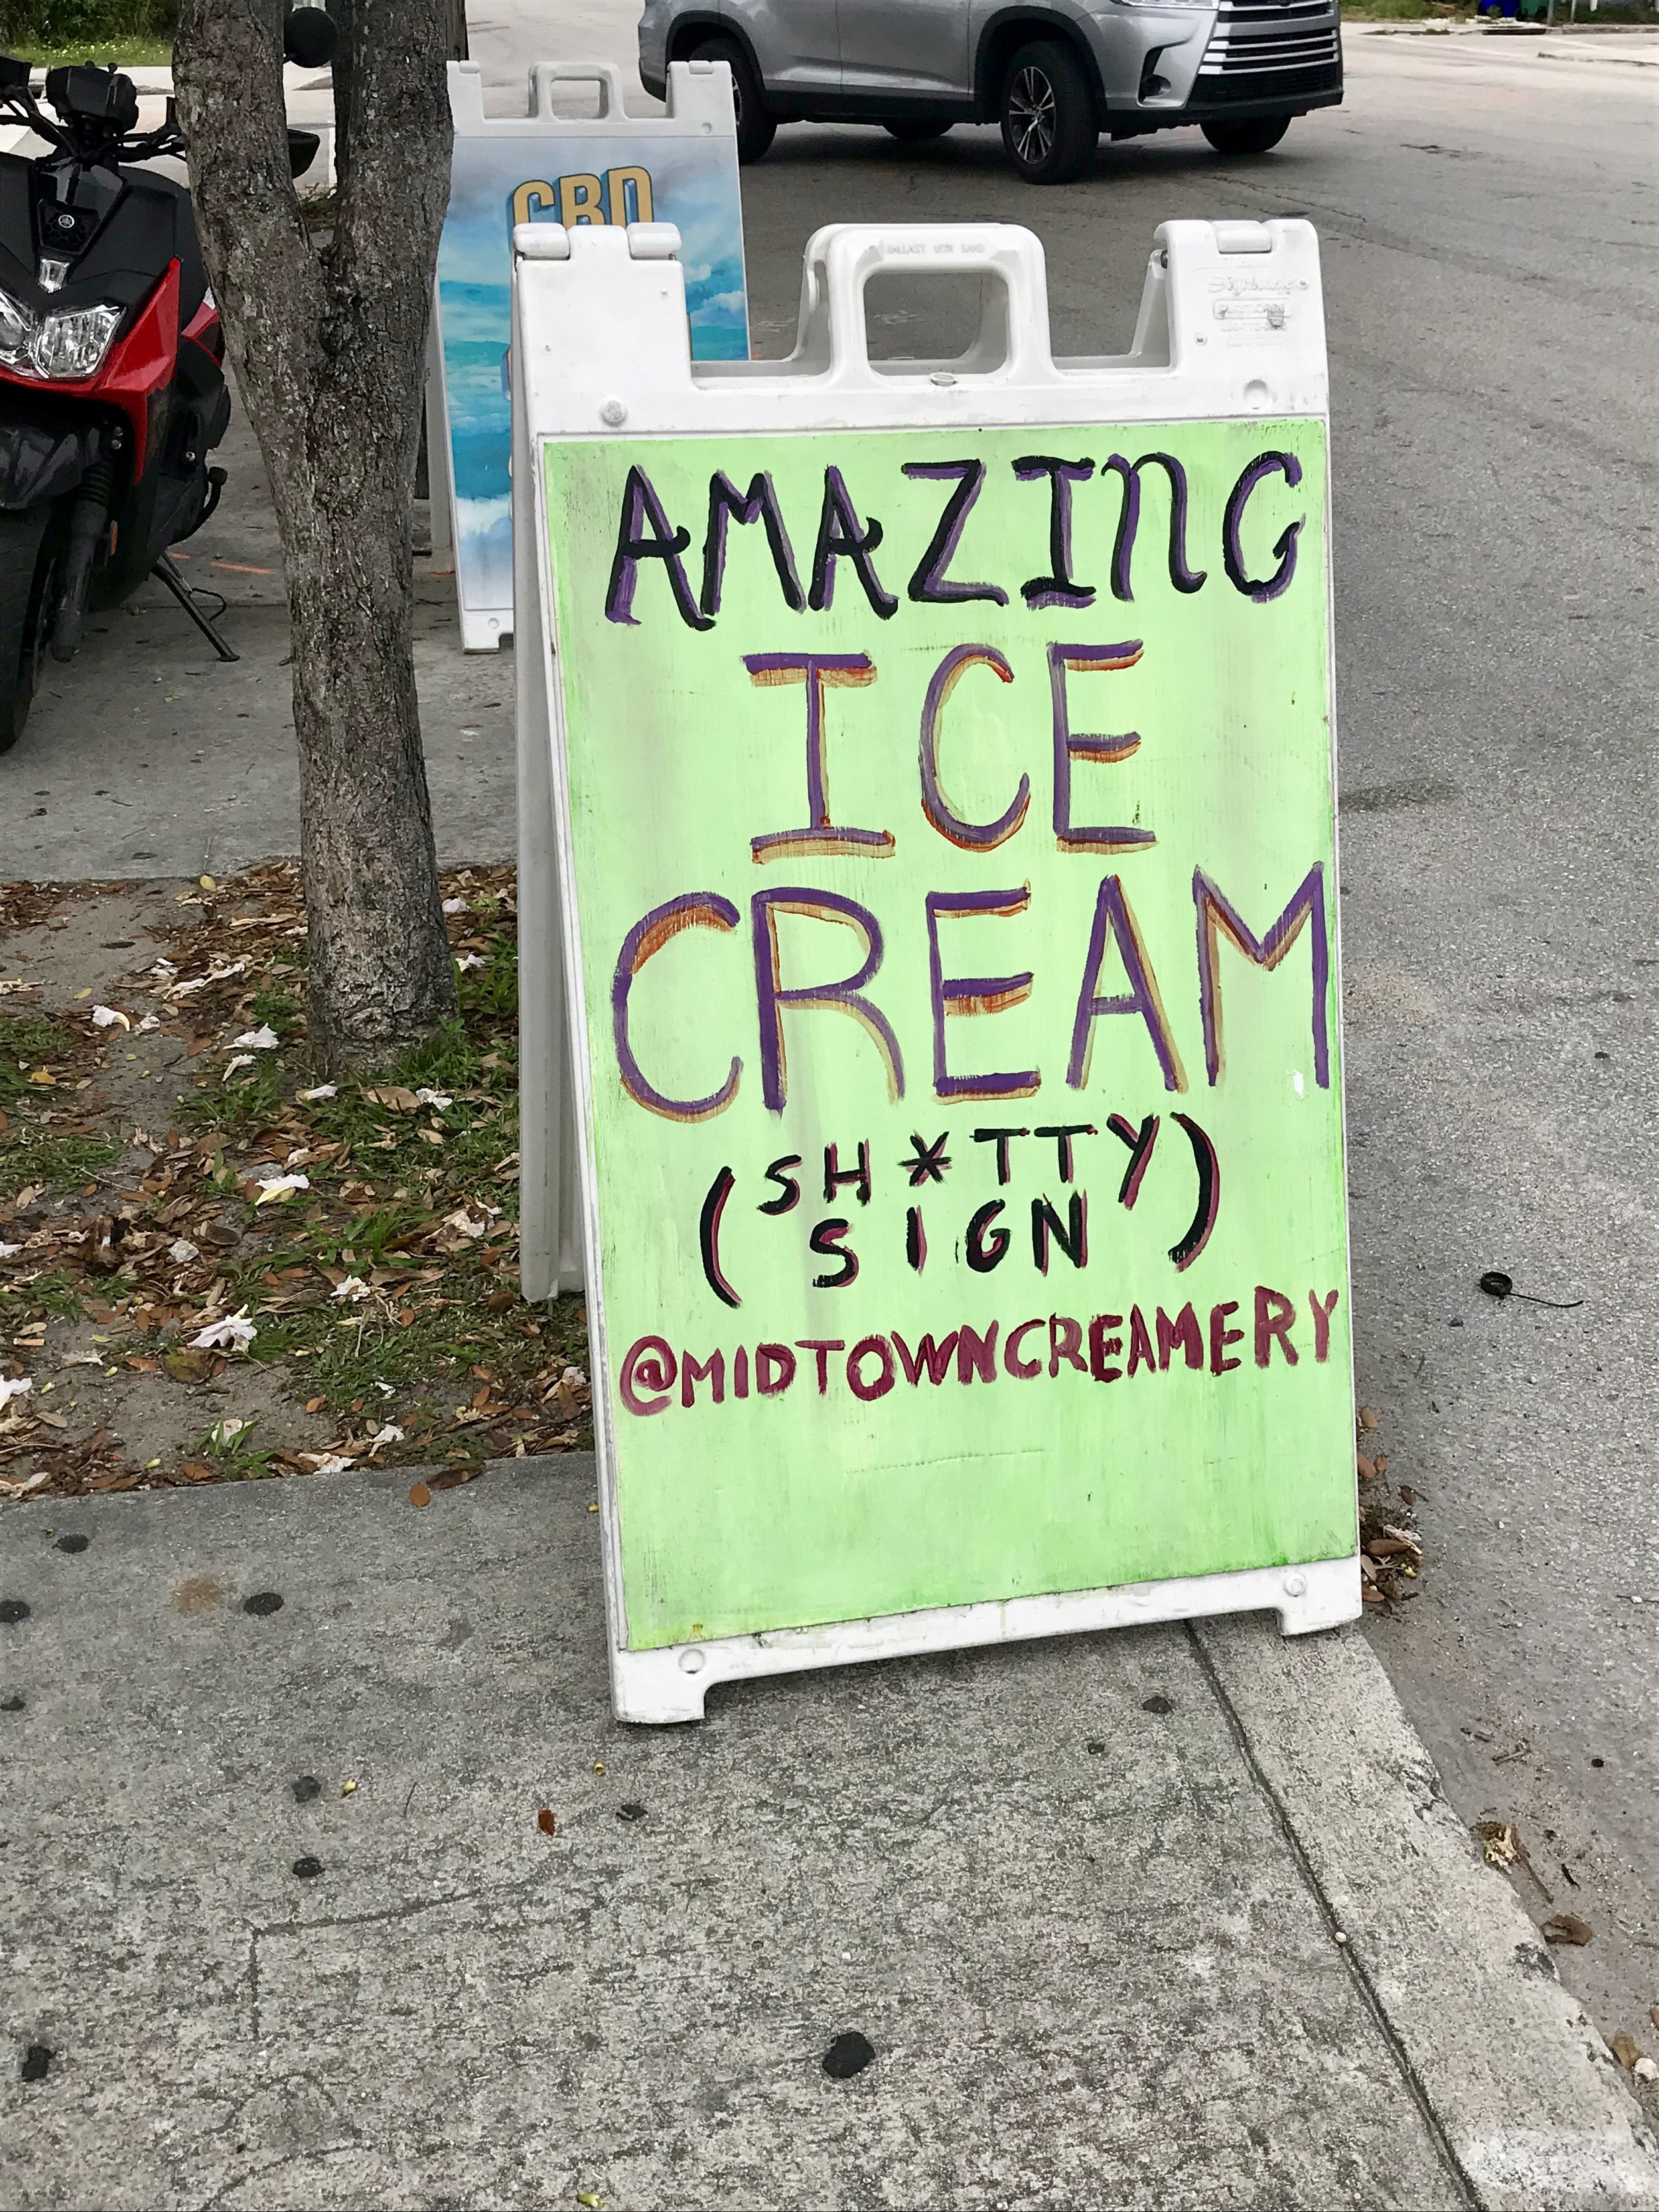 Midtown Creamery - Miami